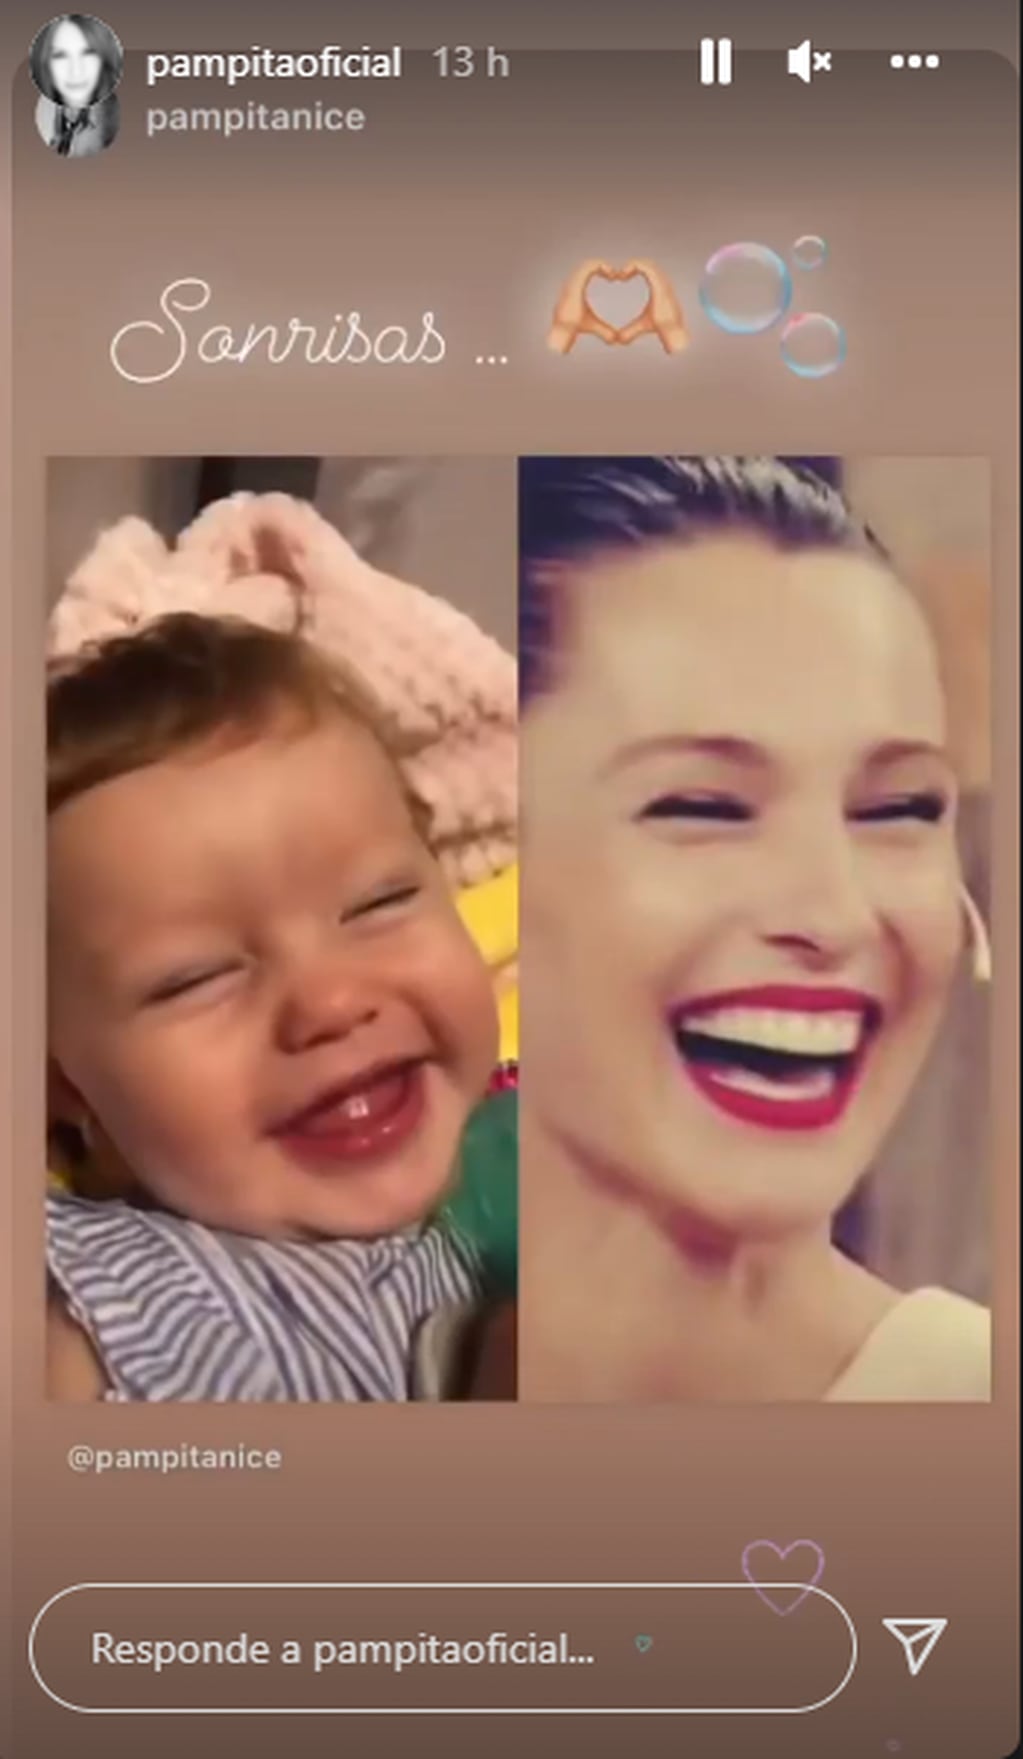 Pampita y la imagen en la que comparó a su beba con ella.